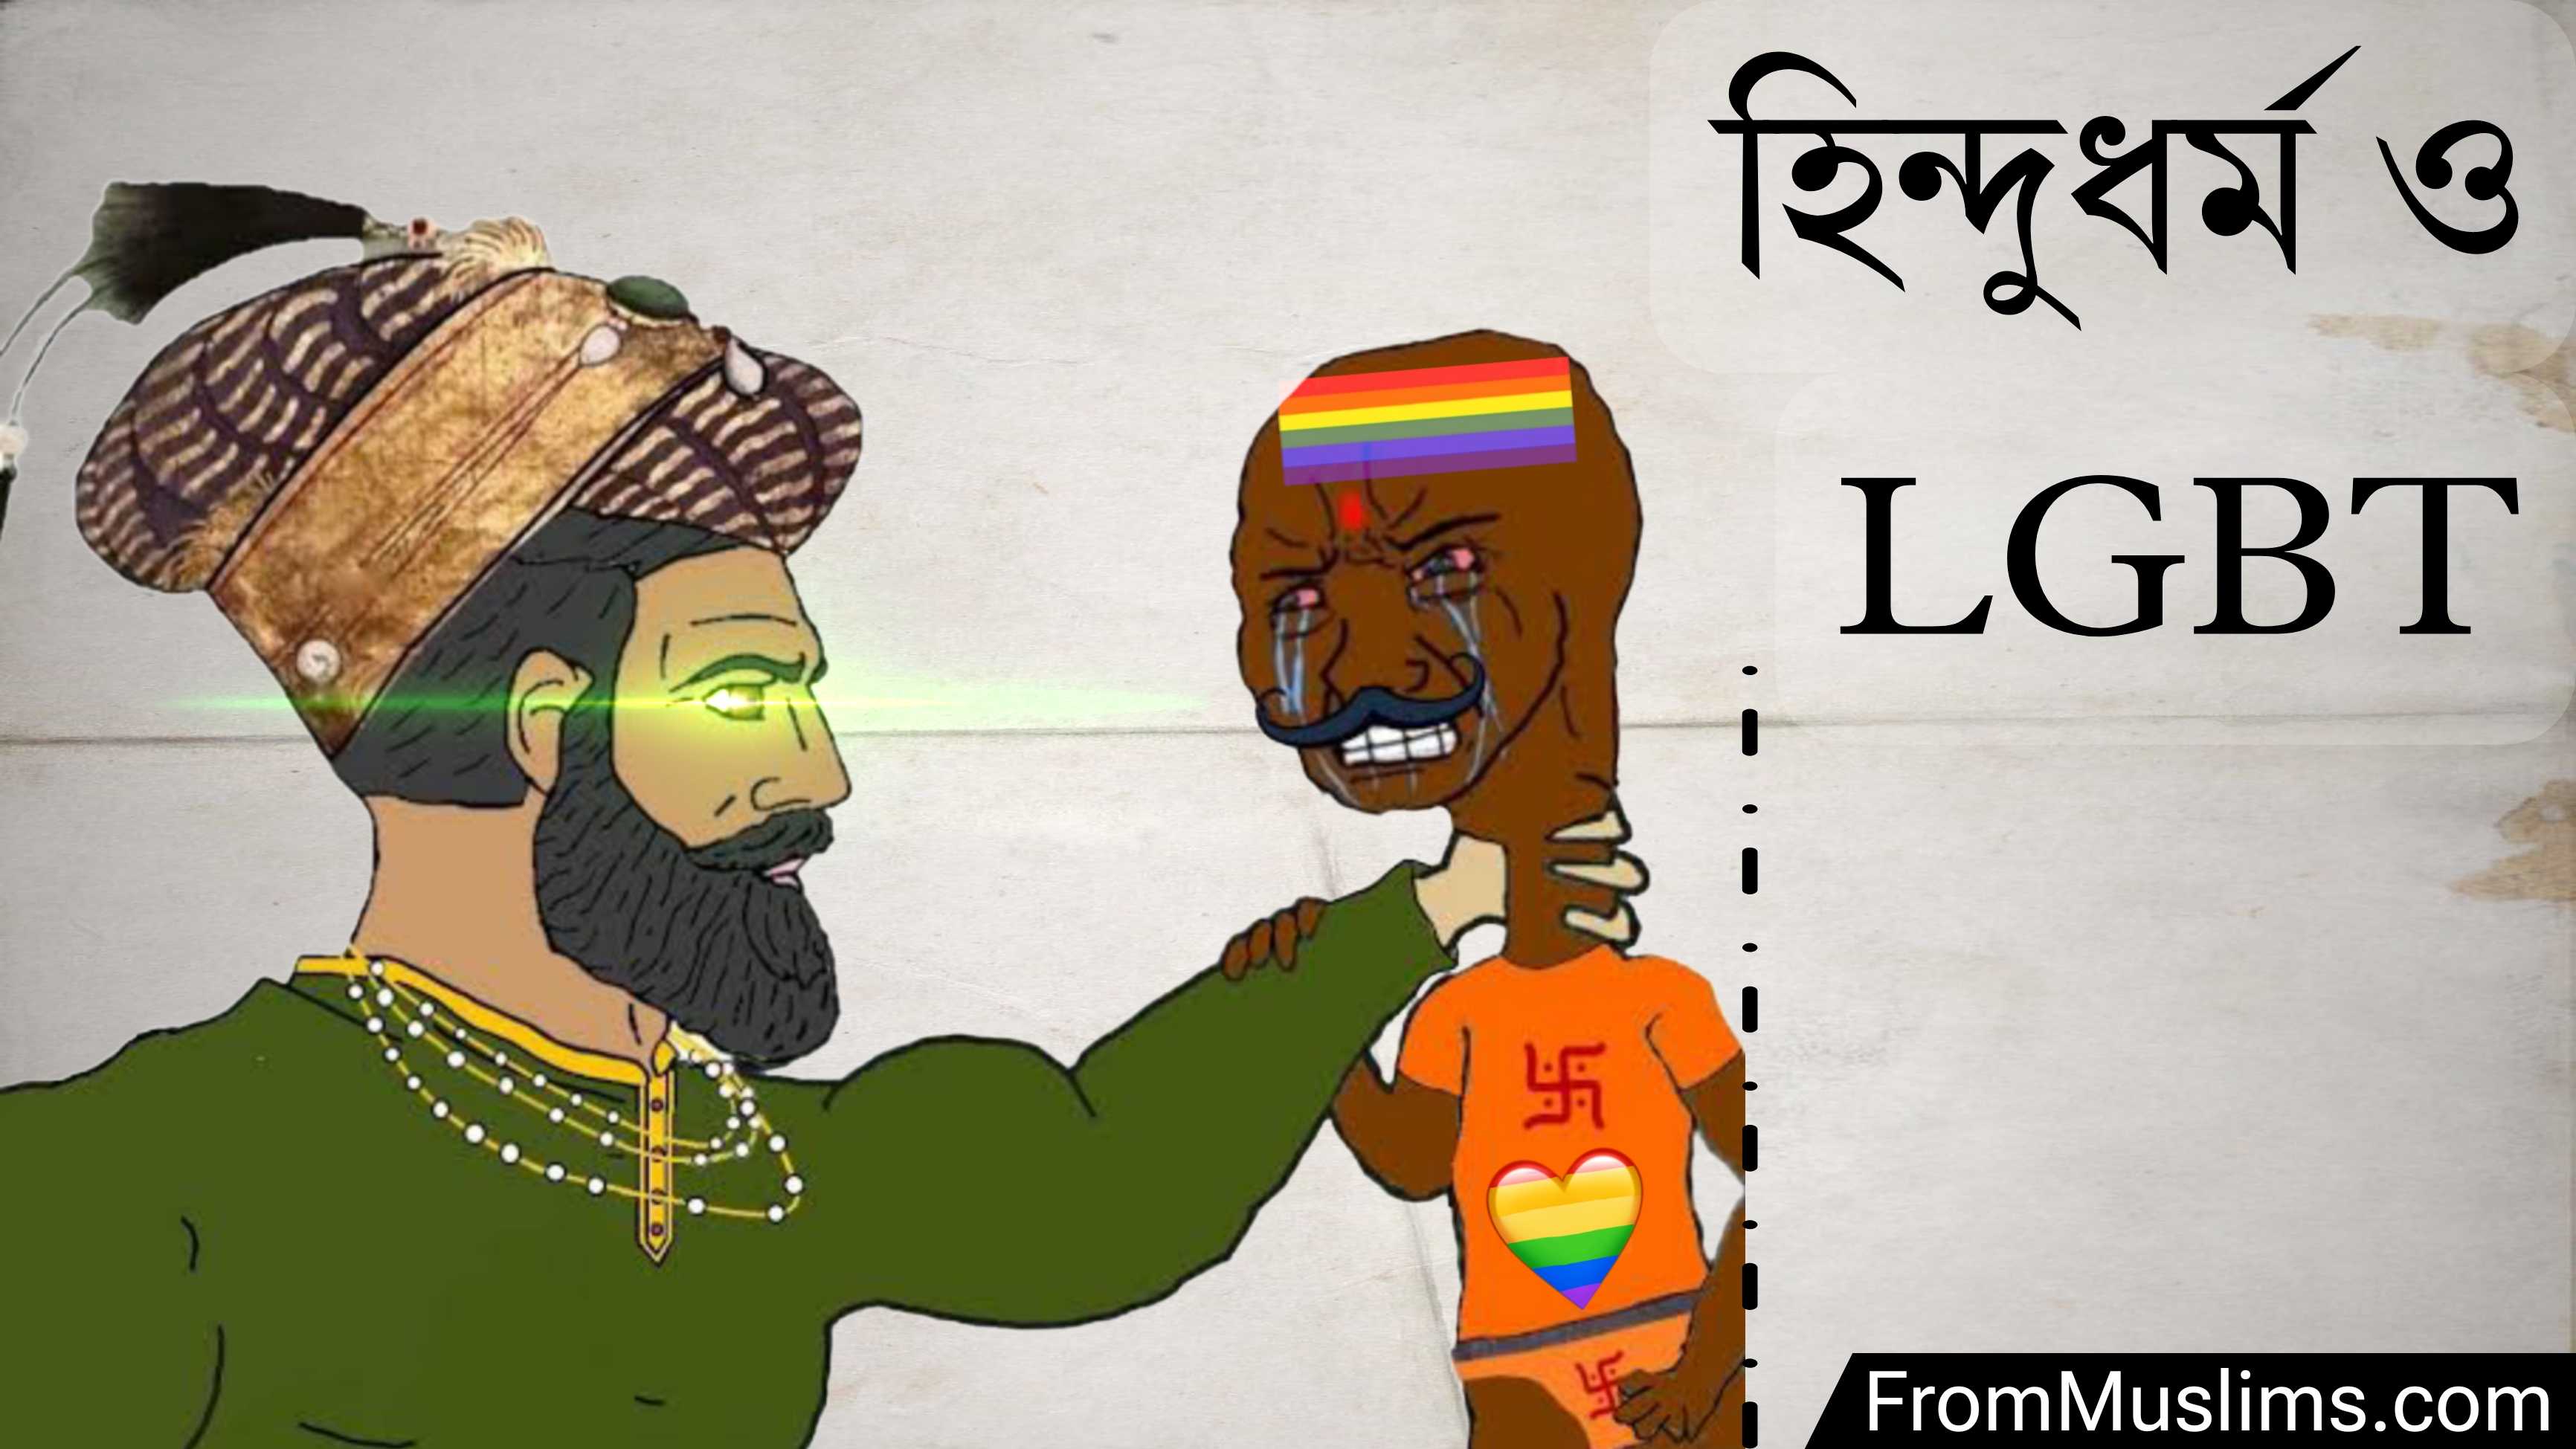 হিন্দুধর্ম ও এলজিবিটি (LGBT) - সমকামিতা ও ট্রান্সজেন্ডারের মিশেল